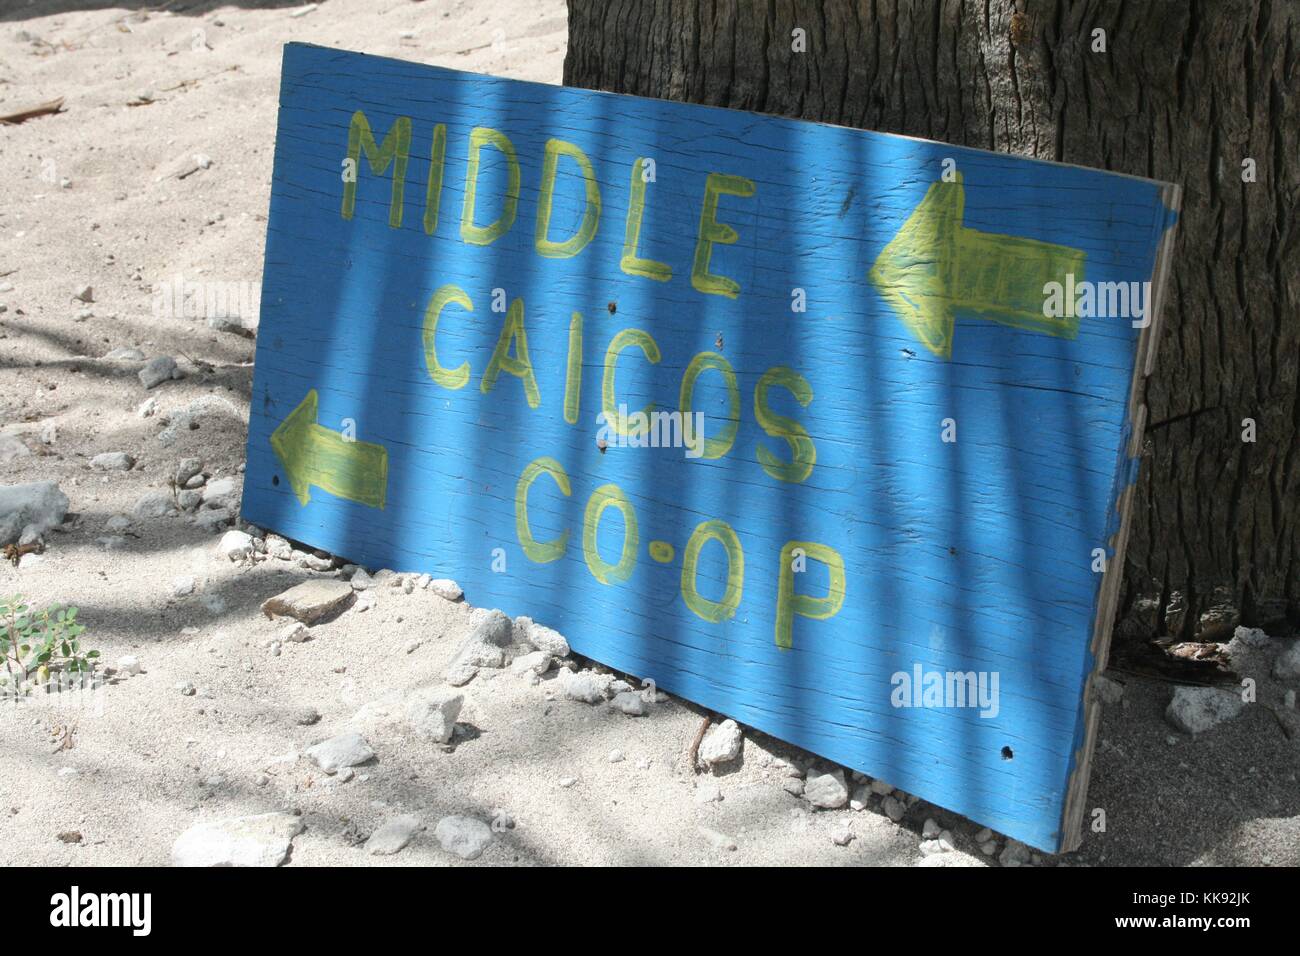 Una fotografia di un dipinto di cartello in legno che legge 'Media Caicos Co-Op", il segno blu dispone anche di frecce che puntano nella direzione dell'azienda, si appoggia contro un albero nella sabbia, il negozio rappresenta gli artisti locali che producono souvenir per i turisti, Isole Turks e Caicos, 2013. Foto Stock